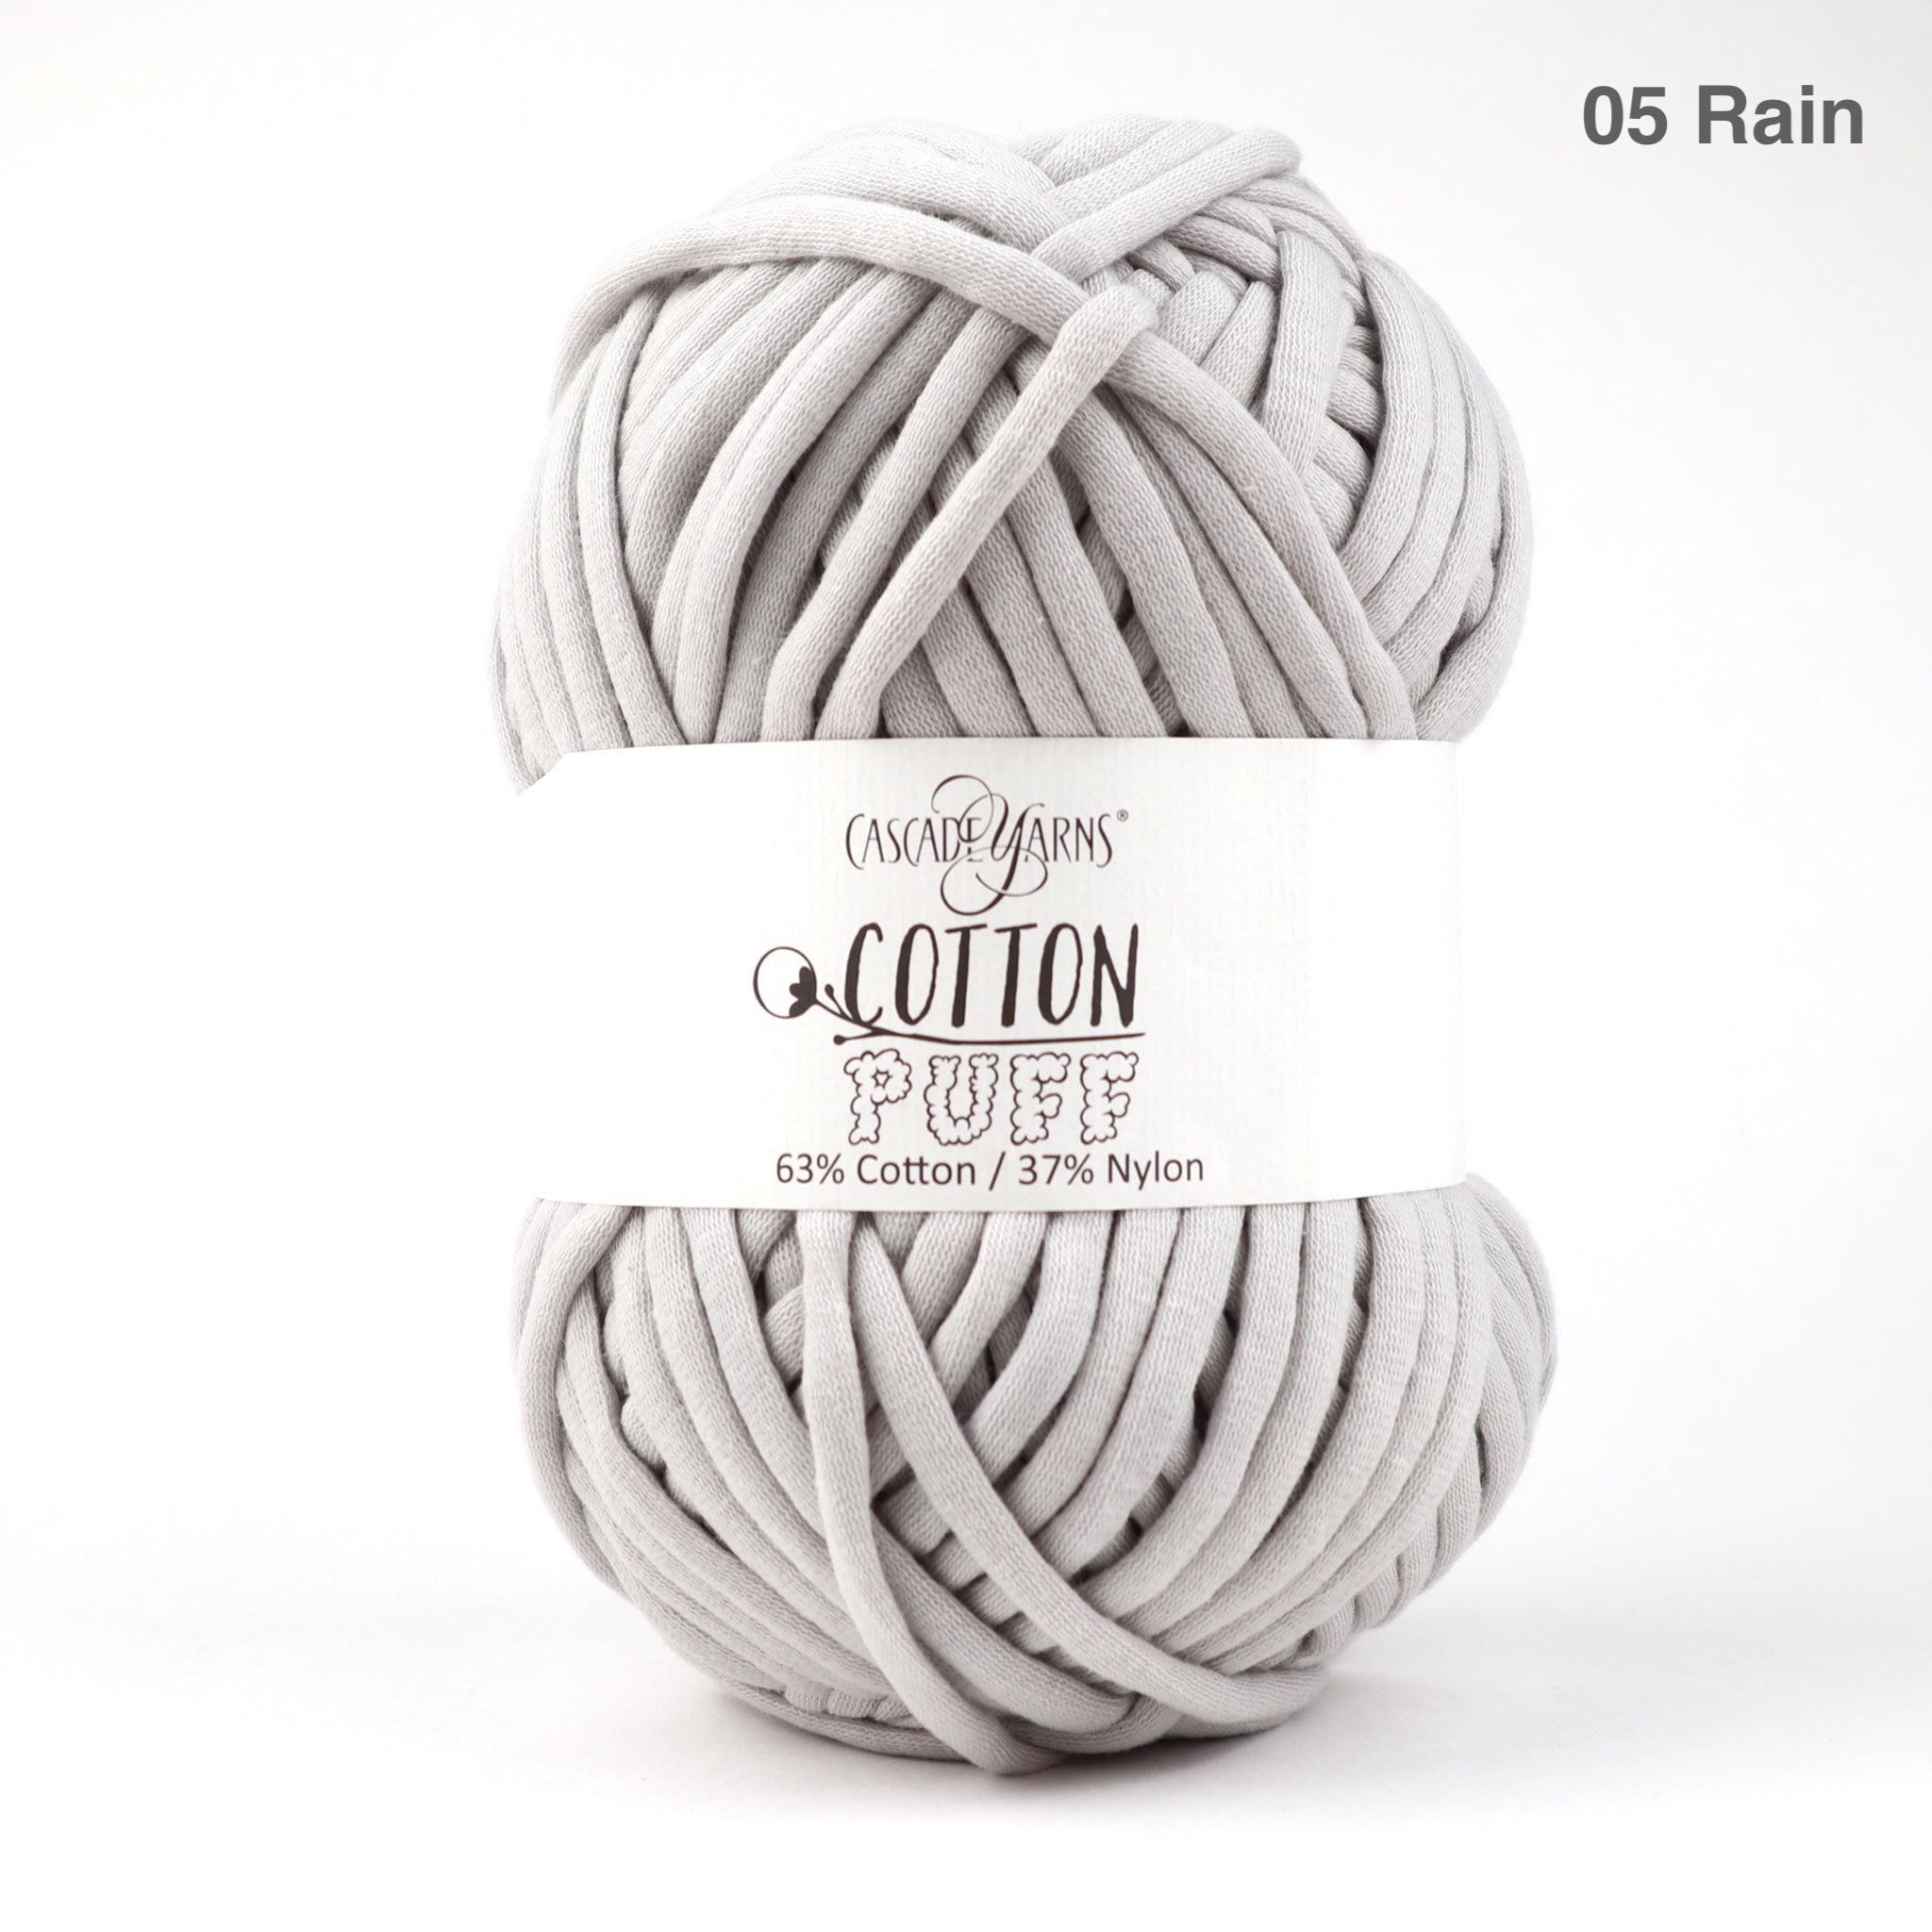 Cascade Yarns Cotton Puff 05 Rain